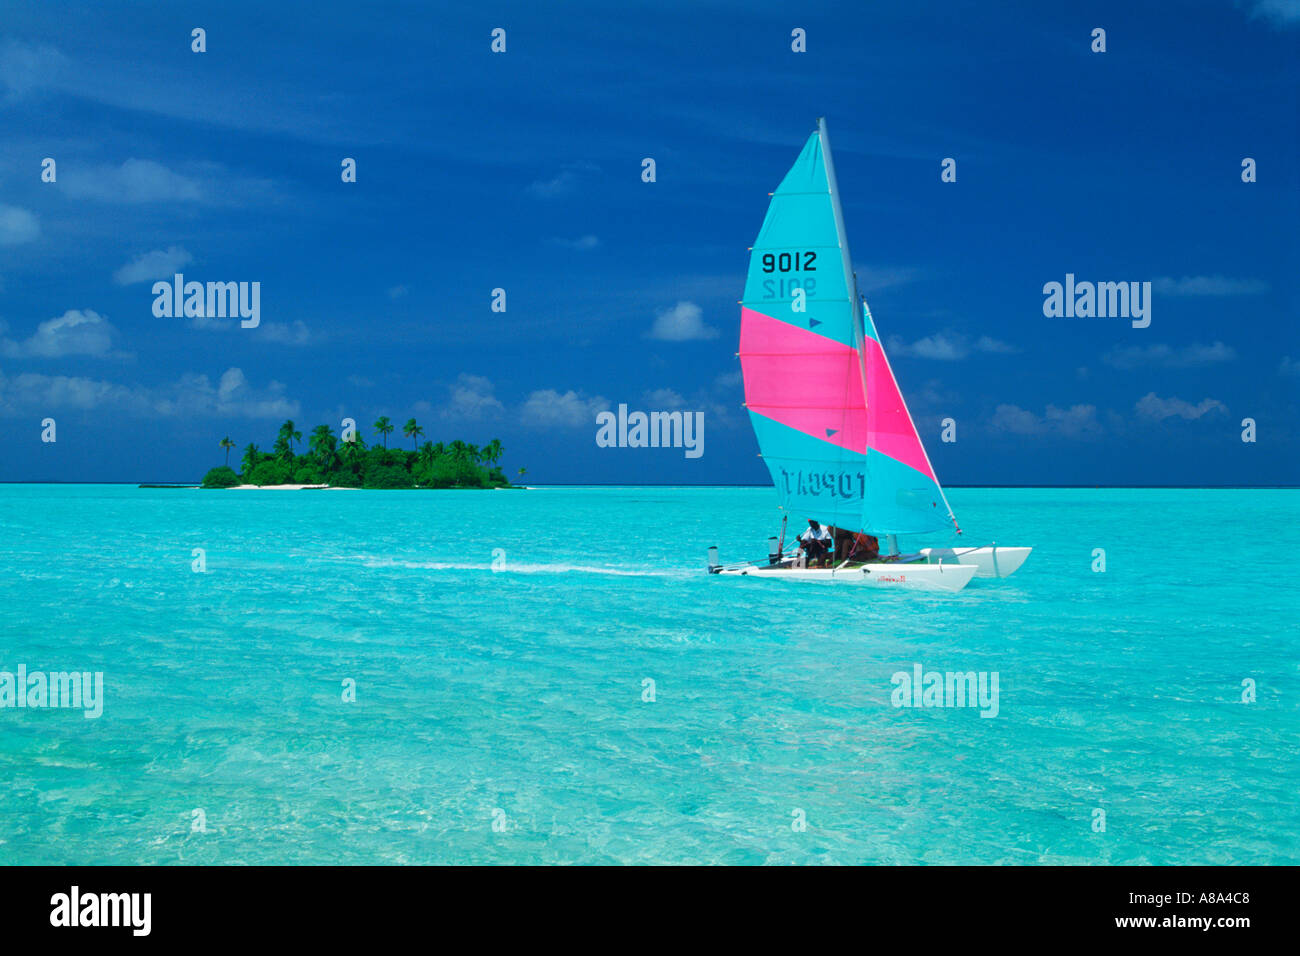 L'avion pour traverser les eaux aqua Catamaran passé île déserte dans les Maldives Banque D'Images